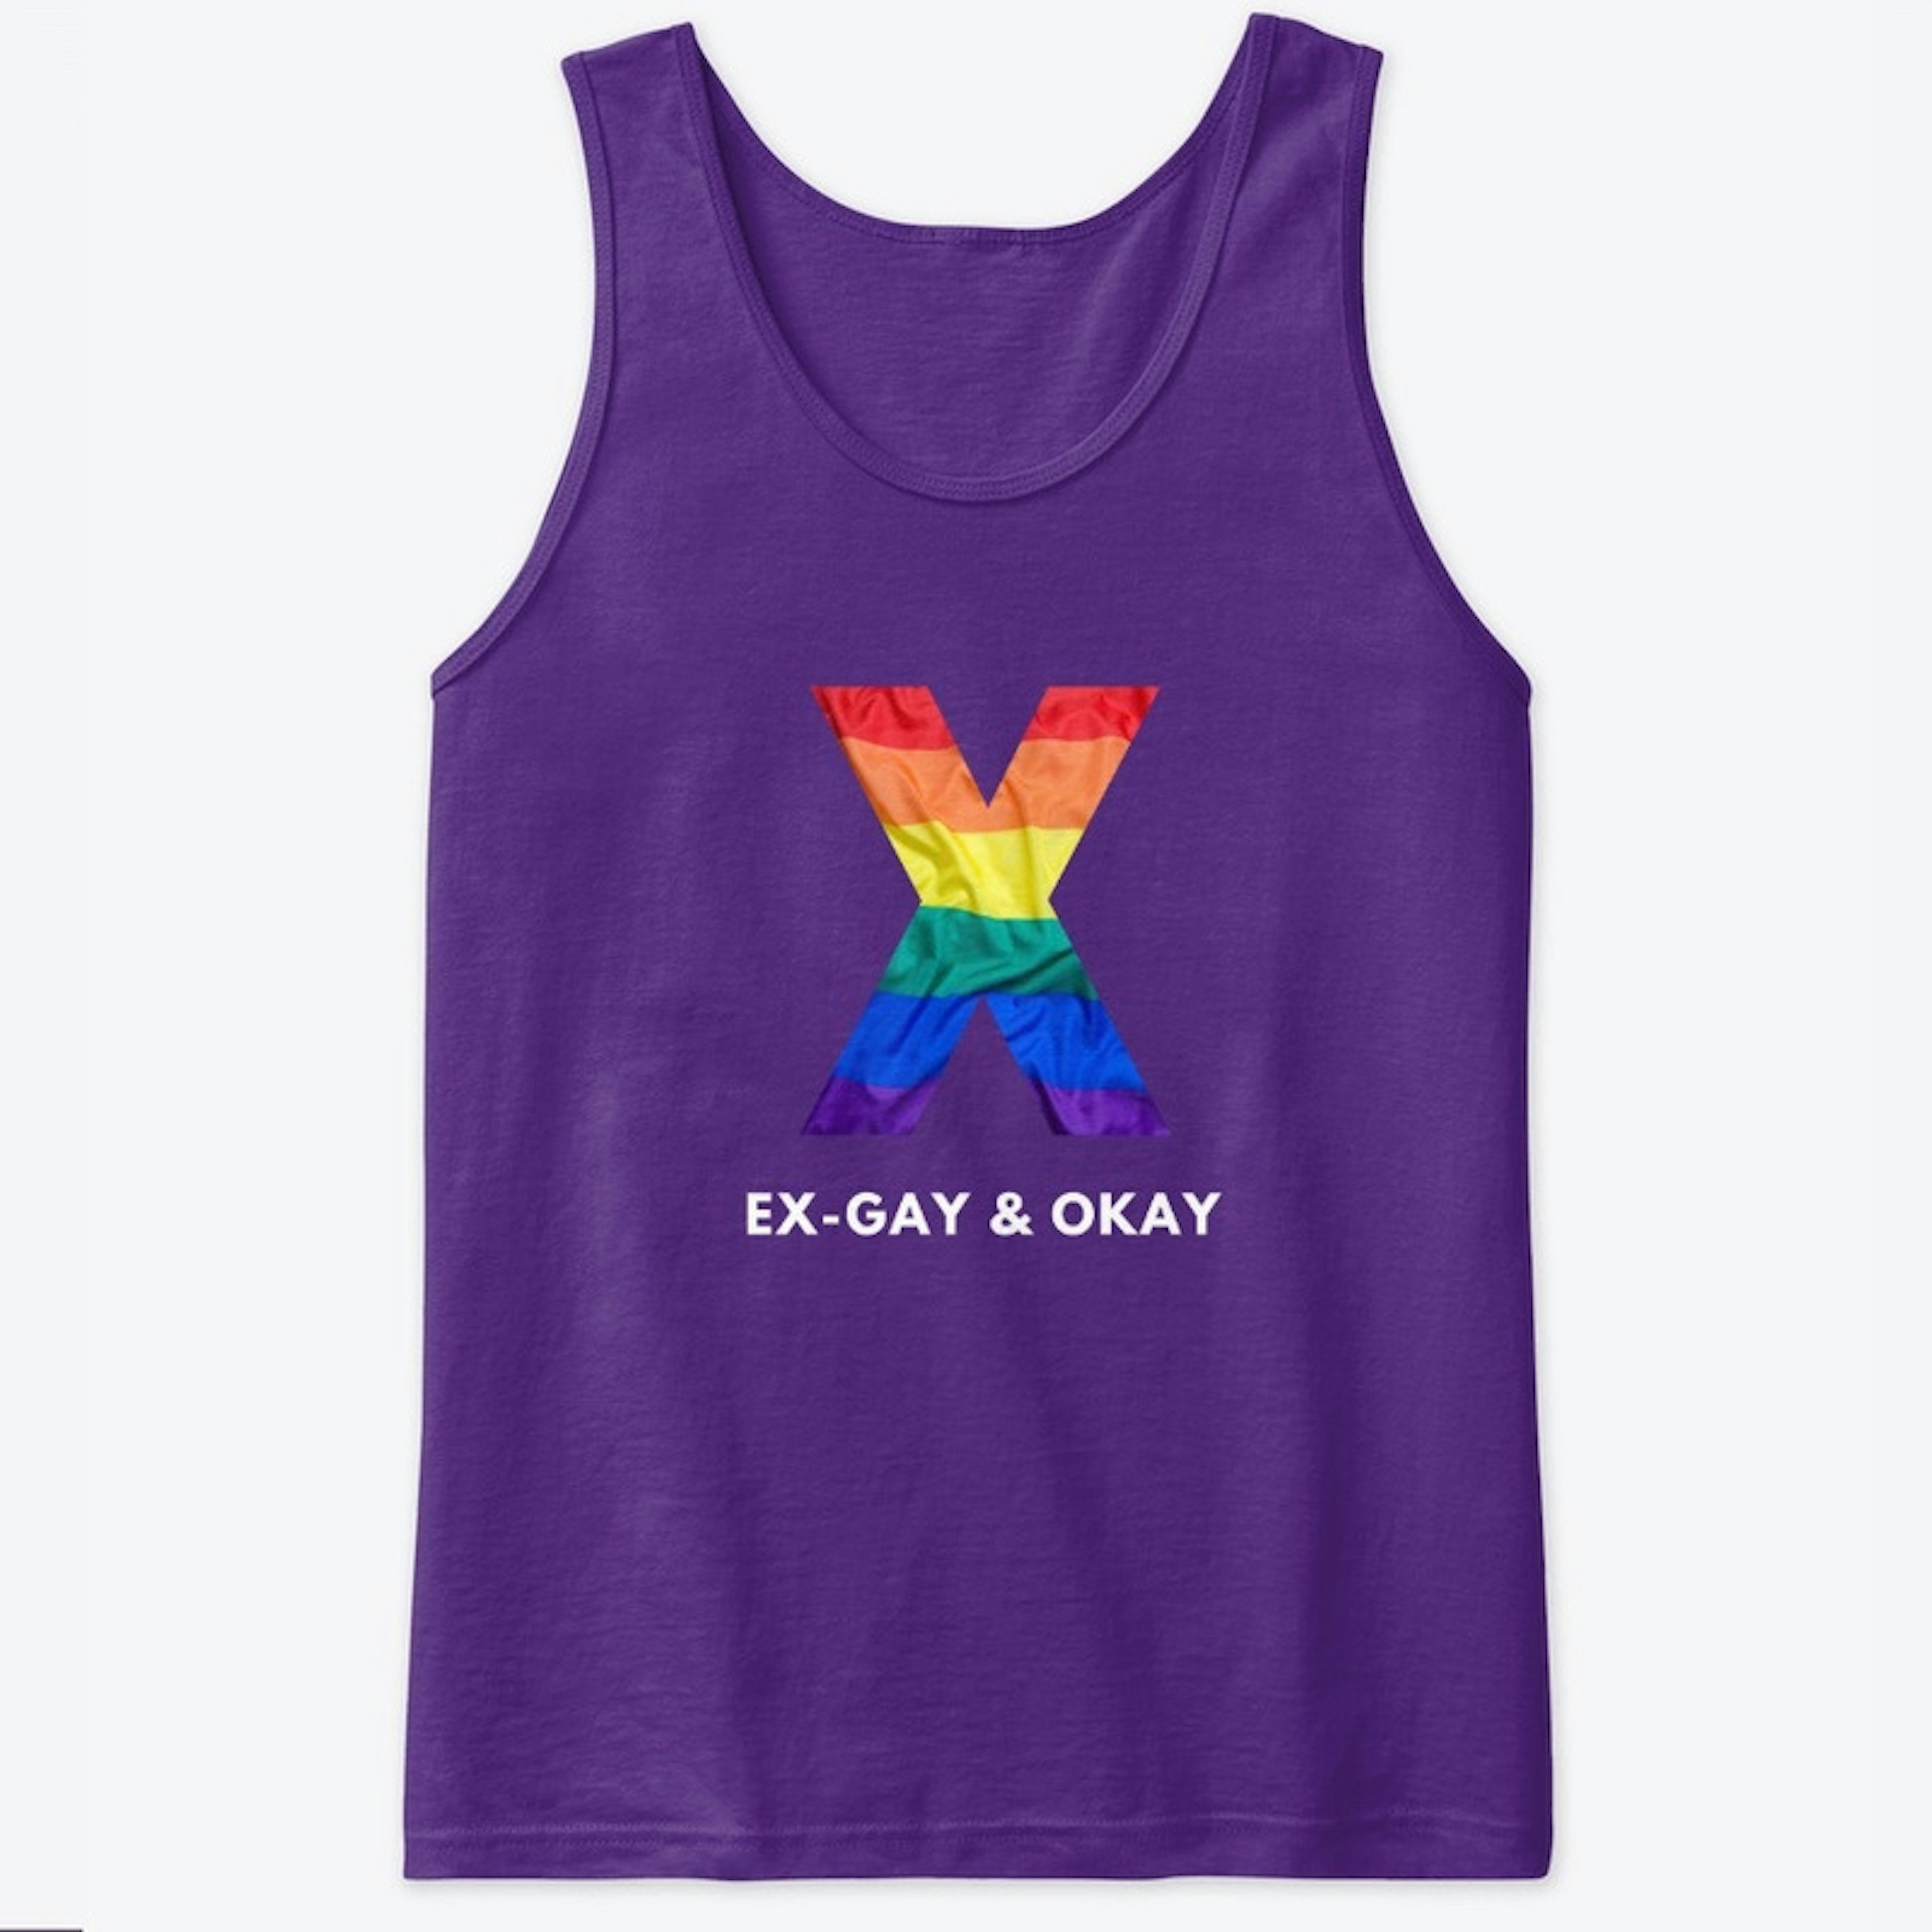 Ex-Gay & Okay